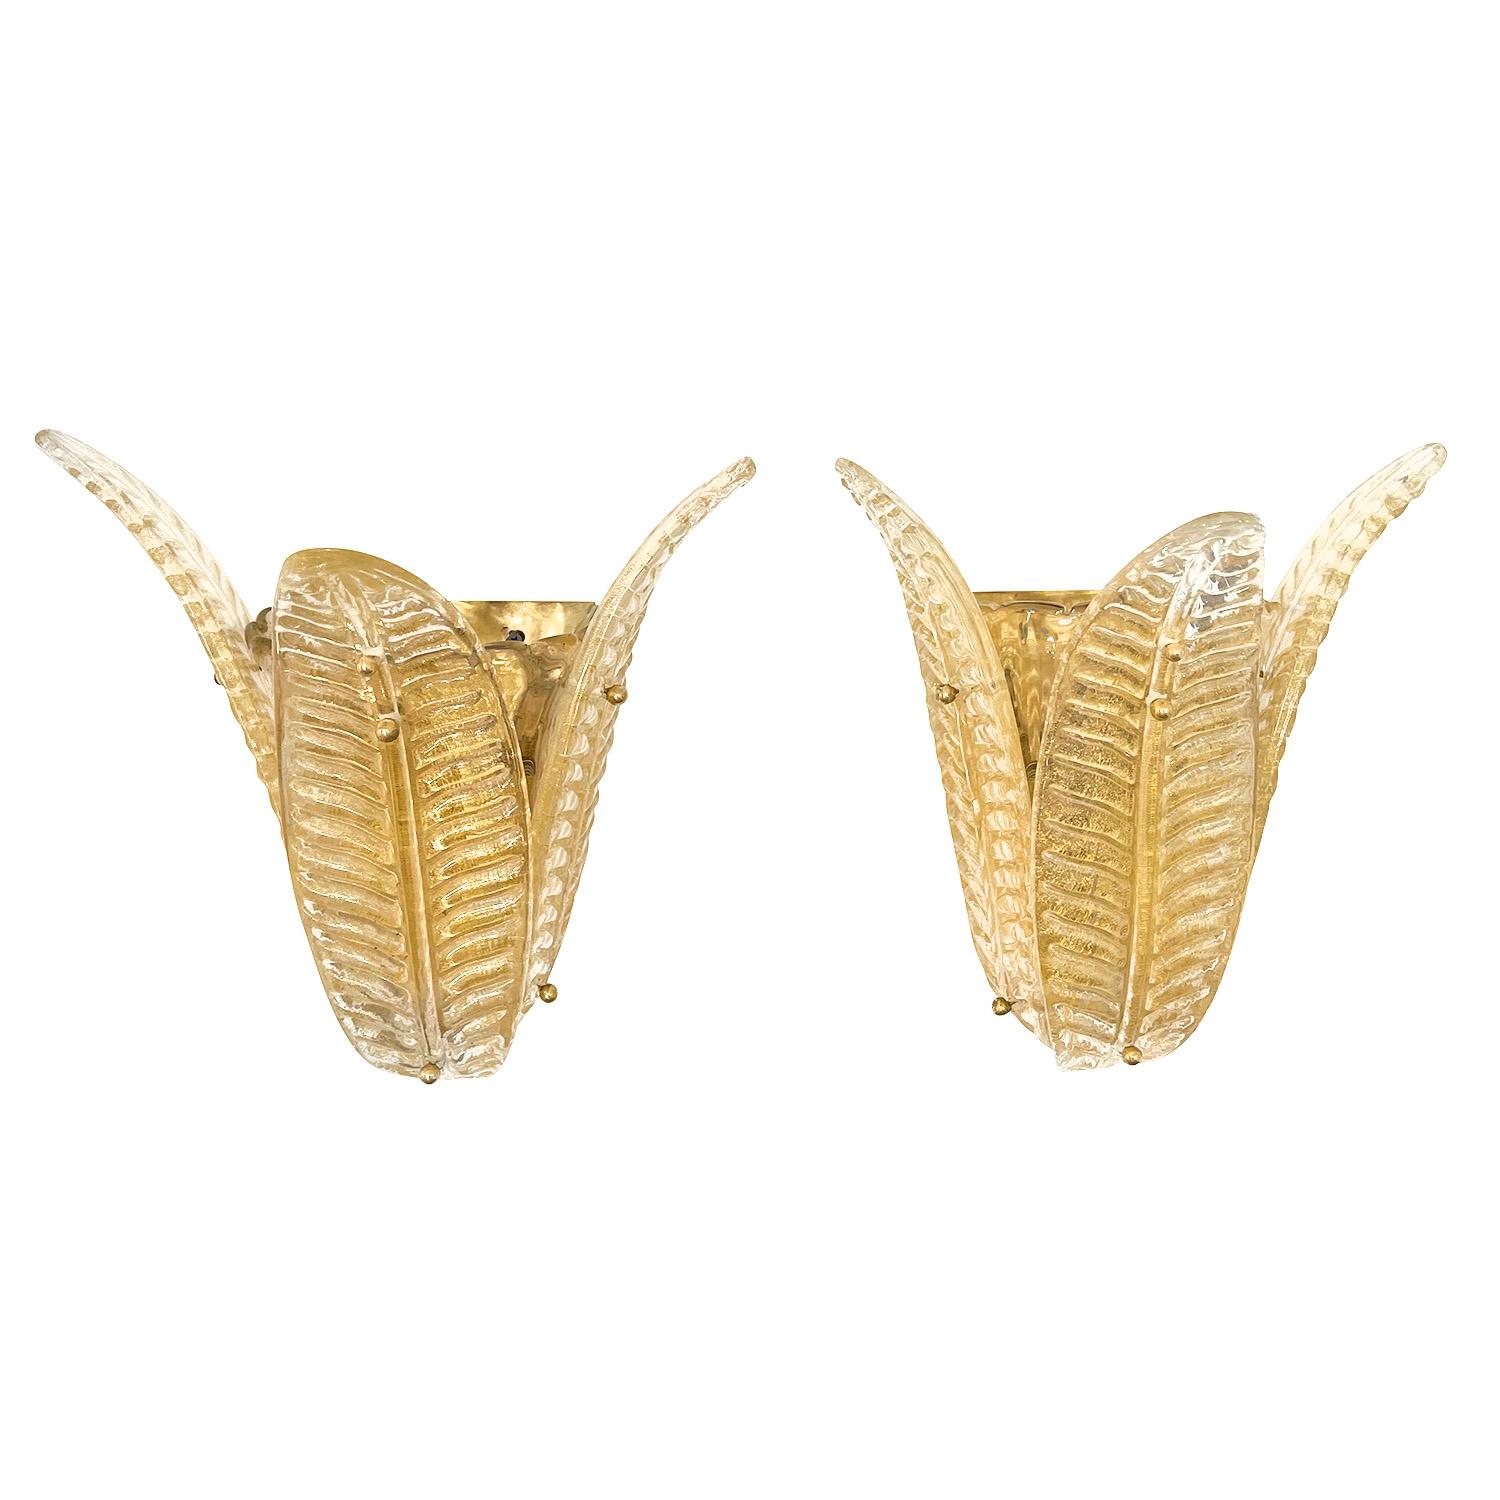 Ein geräuchertes Gold, Vintage Mid-Century Modern Italienisch Paar Wandapplikationen aus mundgeblasenem Muranoglas Gold Sommerso, durch eine Messingstruktur unterstützt. Jede der Wandleuchten besteht aus drei Flügeln und einer zweiflammigen Fassung,